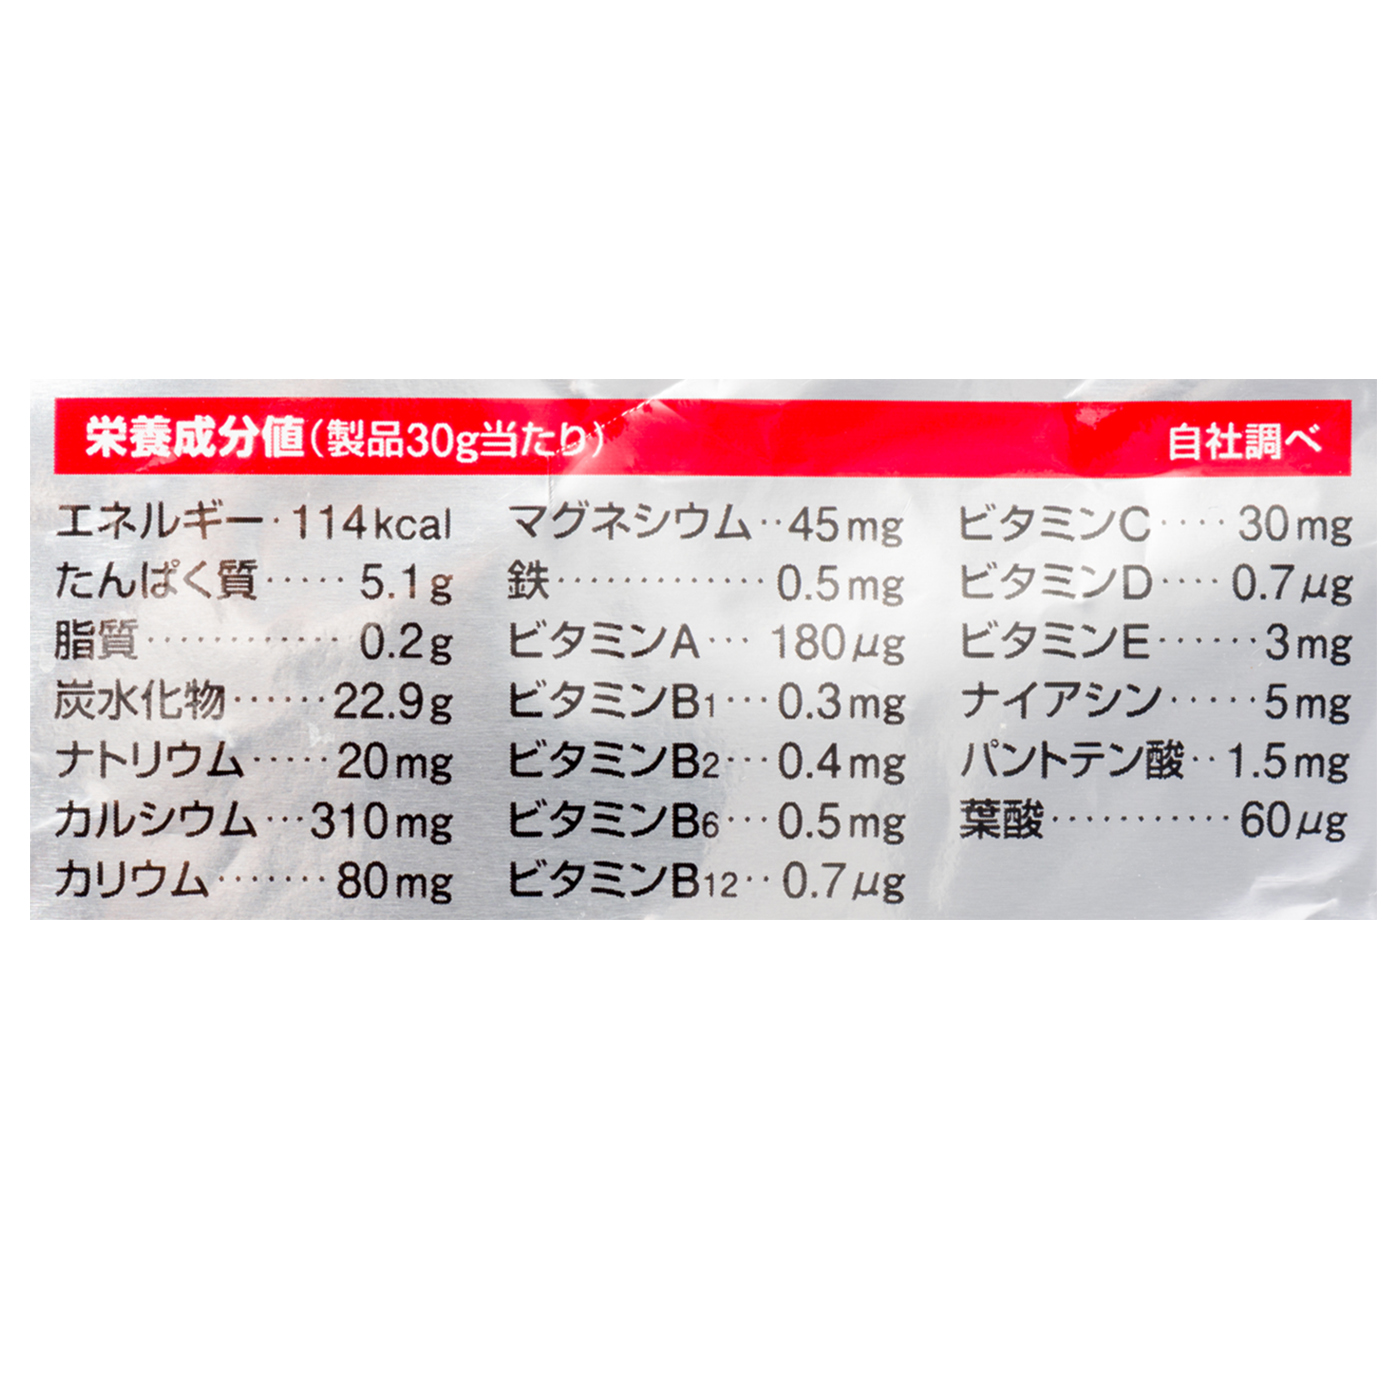 2394円 【おしゃれ】 ケンタイ ウェイトゲインアドバンス バナナラテ風味 3kg